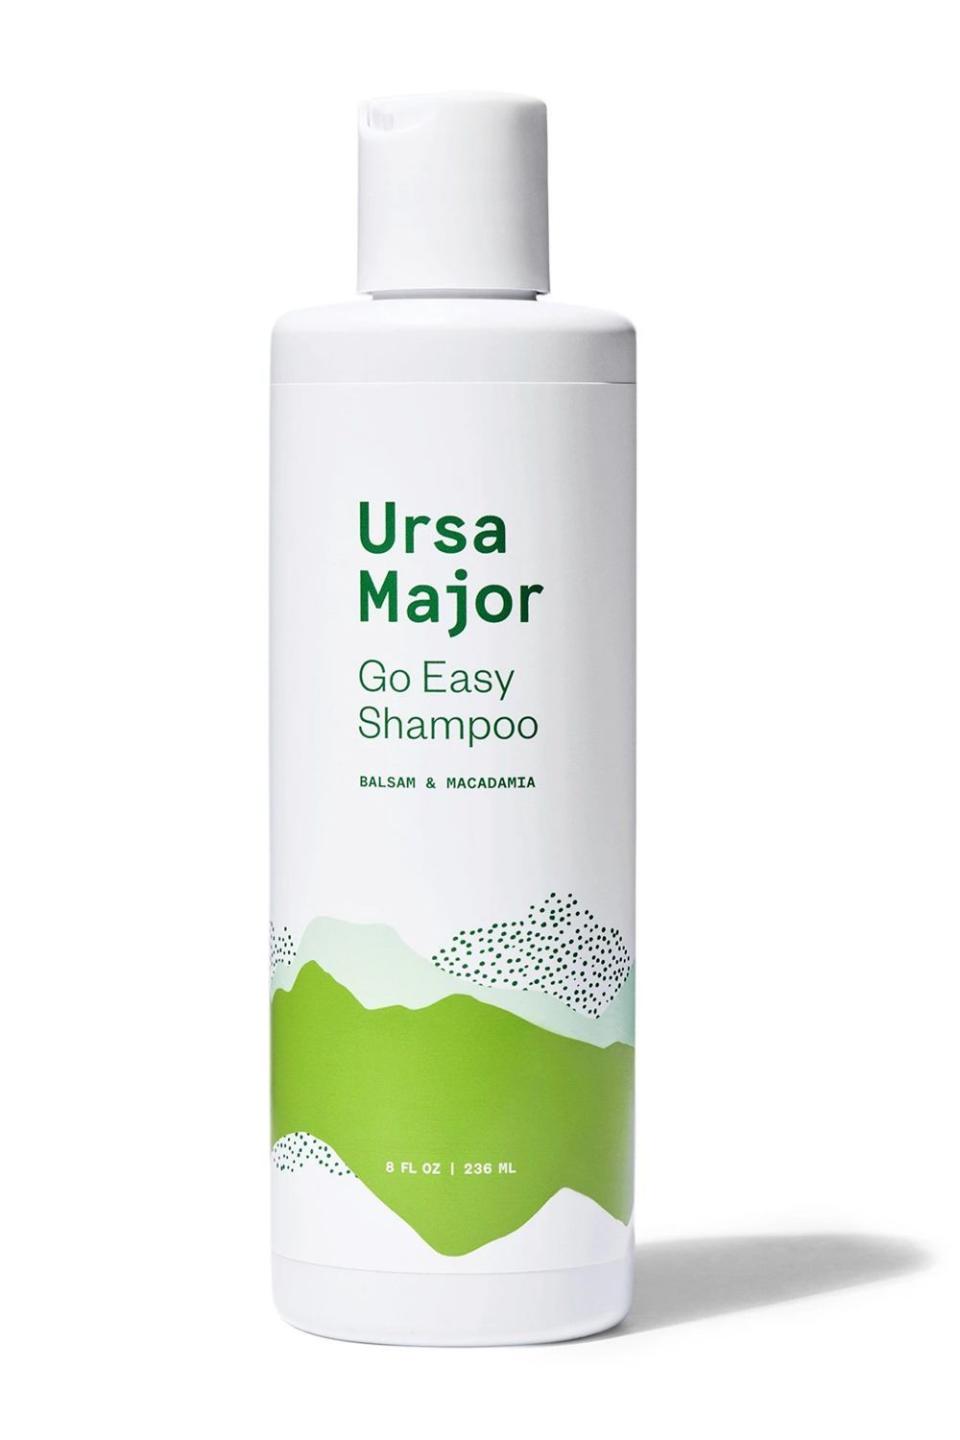 2) Ursa Major Go Easy Shampoo